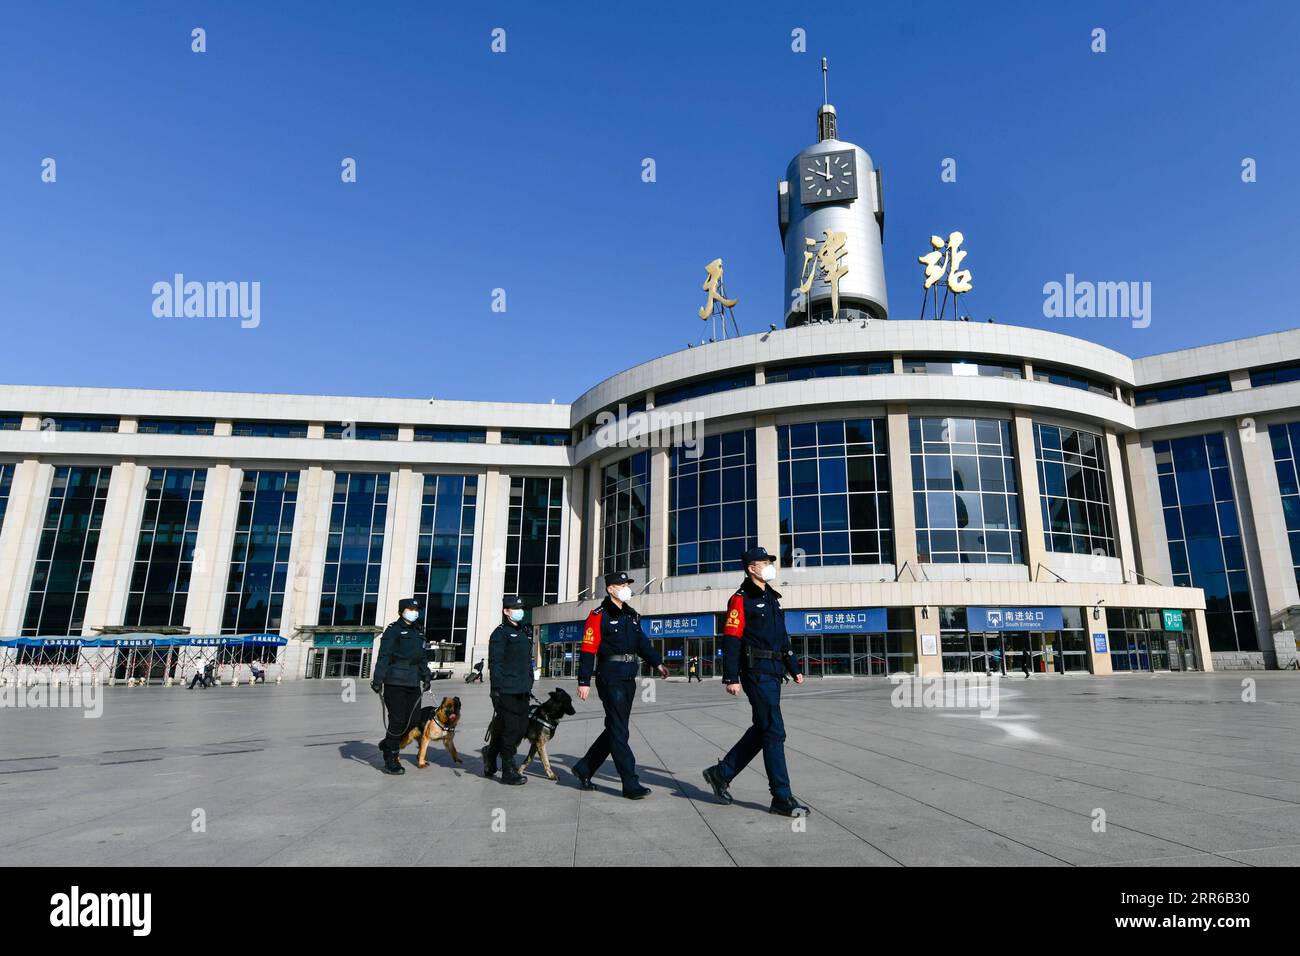 210203 -- TIANJIN, 3 febbraio 2021 -- poliziotti e cani di polizia pattugliano sulla piazza della stazione ferroviaria di Tianjin nel nord della Cina, Tianjin, 1 febbraio 2021. Fen di , un cane ibrido tedesco olandese e anche un cane da guardia presso la filiale di Tianjin dell'ufficio di pubblica sicurezza ferroviaria di Pechino, lavora e vive con il suo allenatore Zhao Hui da tre anni. Ora ci sono una dozzina di cani come Fen di, che agiscono come guardie nella pattuglia di routine e buoni partner nell'addestramento. Durante la corsa di quest'anno al Festival di Primavera, altre pattuglie per Fen di e i suoi compagni di cani sono organizzate presso la ferrovia di Tianjin Foto Stock